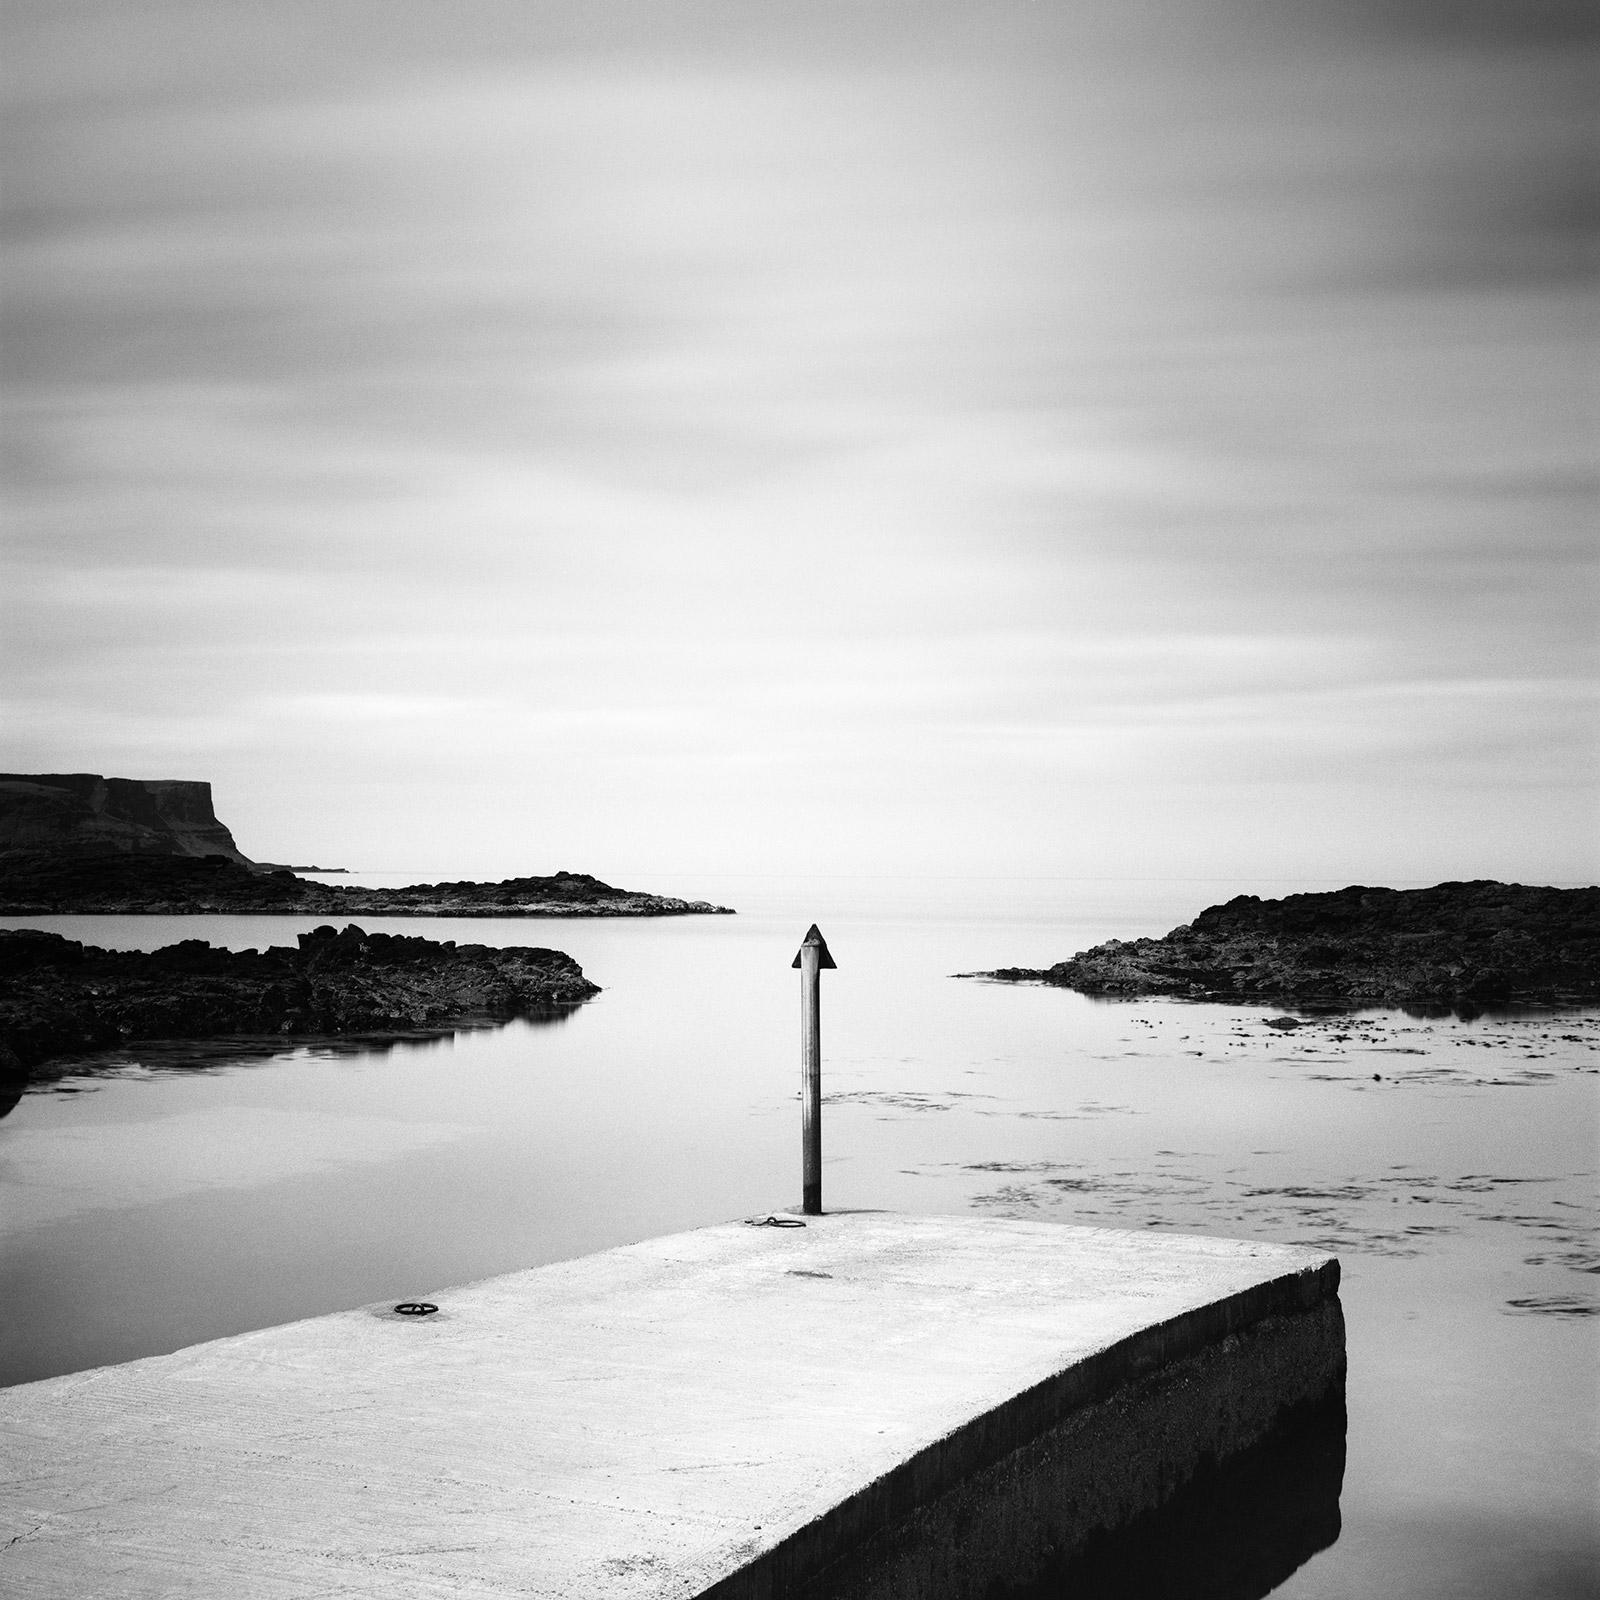 Pier, Irish coast, Ireland, long exposure black and white photography landscape